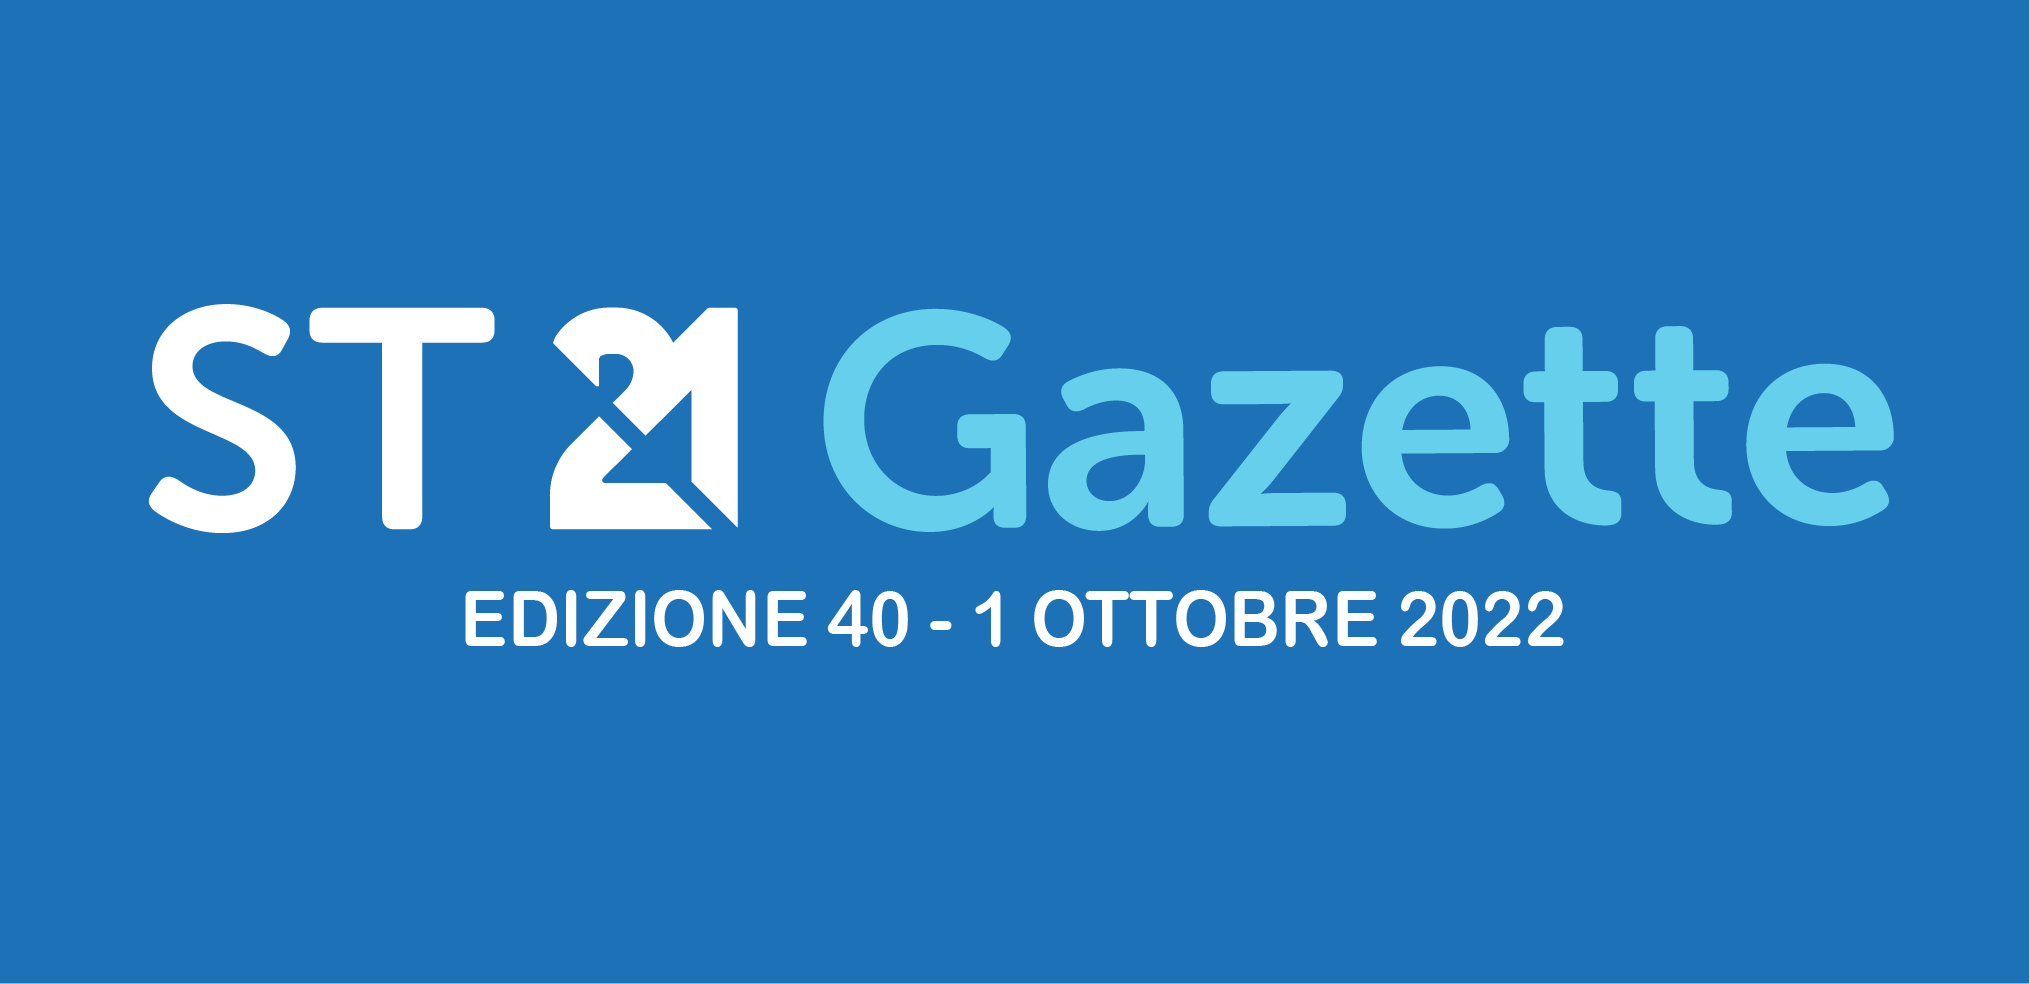 ST21 GAZETTE OTTOBRE 2022